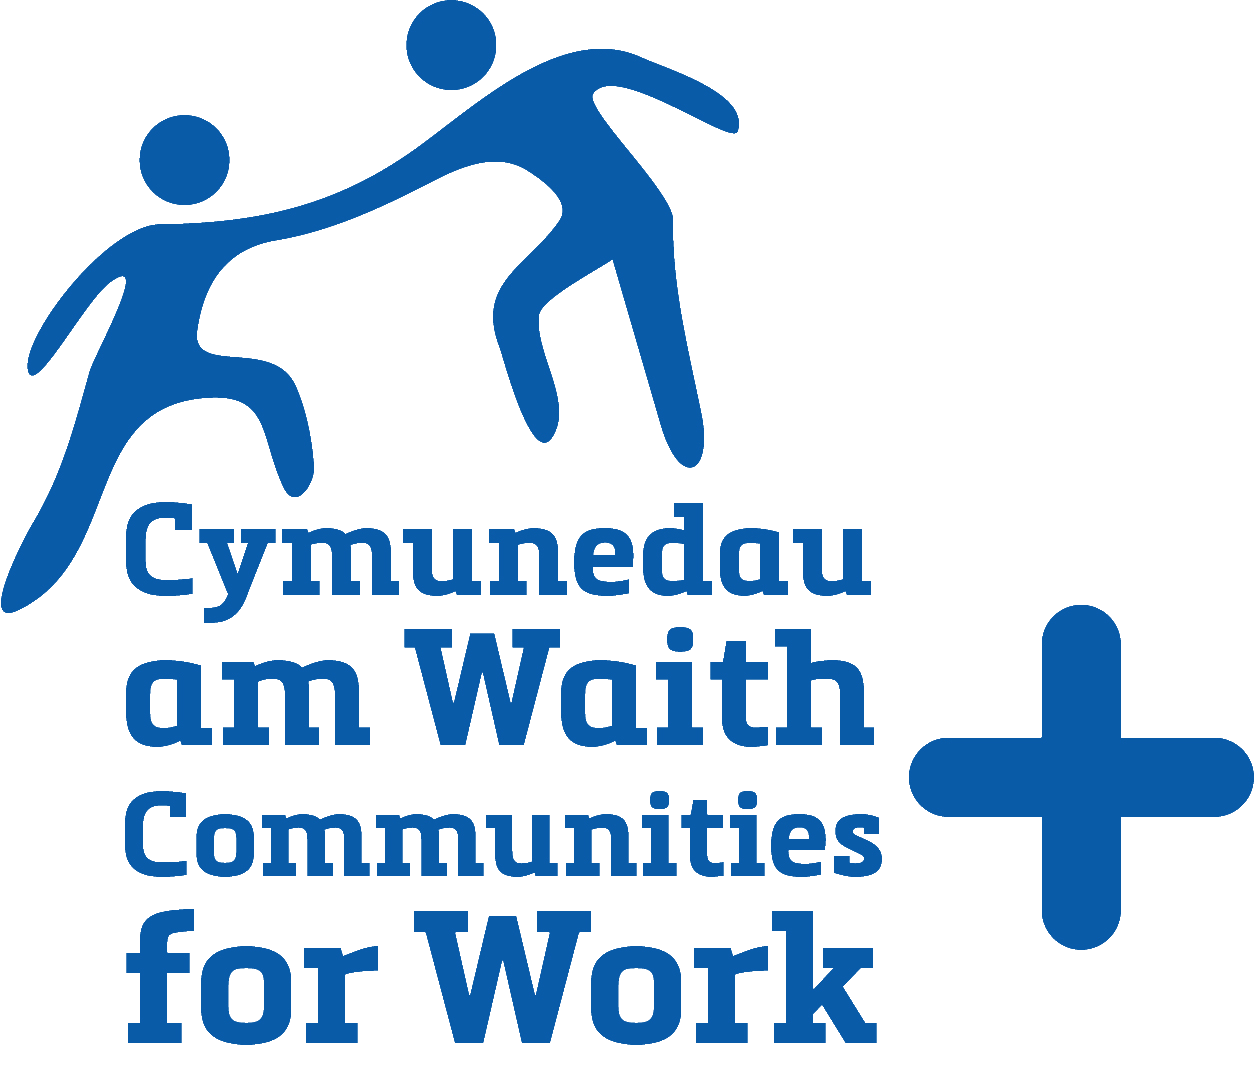 Cymunedau am Waith a Mwy - Communities for Work Plus